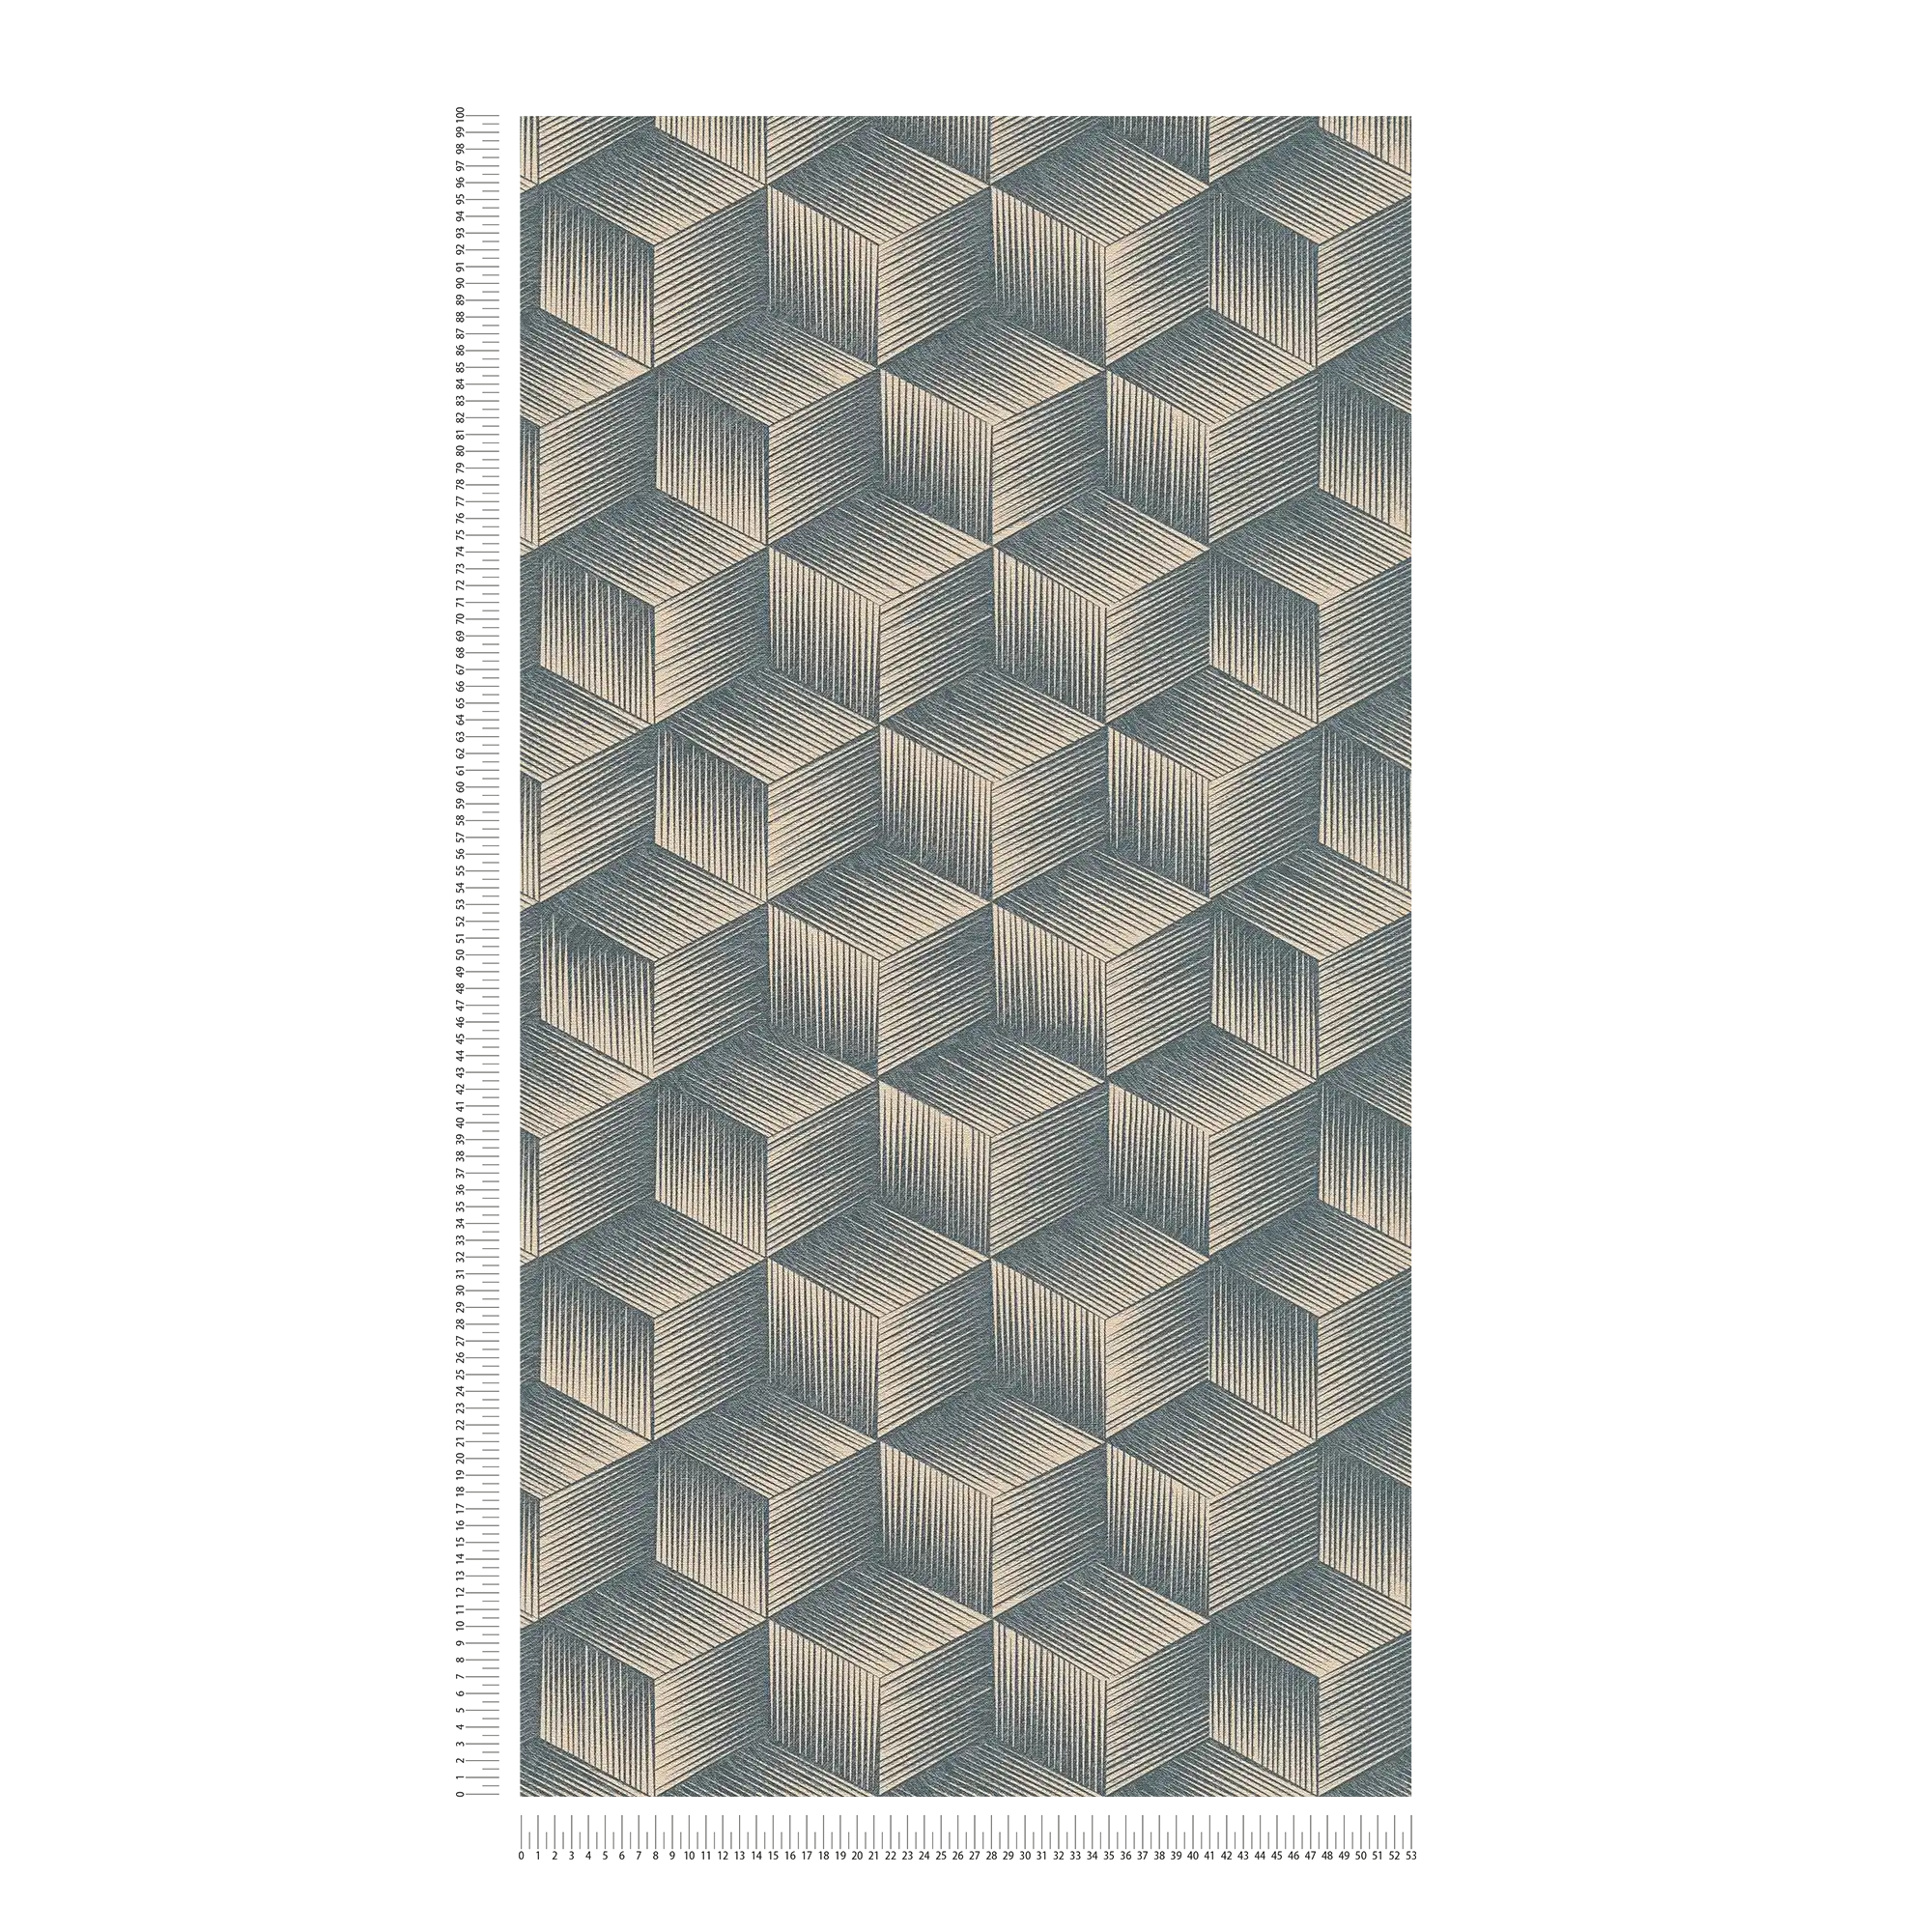             Vliesbehang met kubuspatroon 3D-optiek PVC-vrij - blauw, beige
        